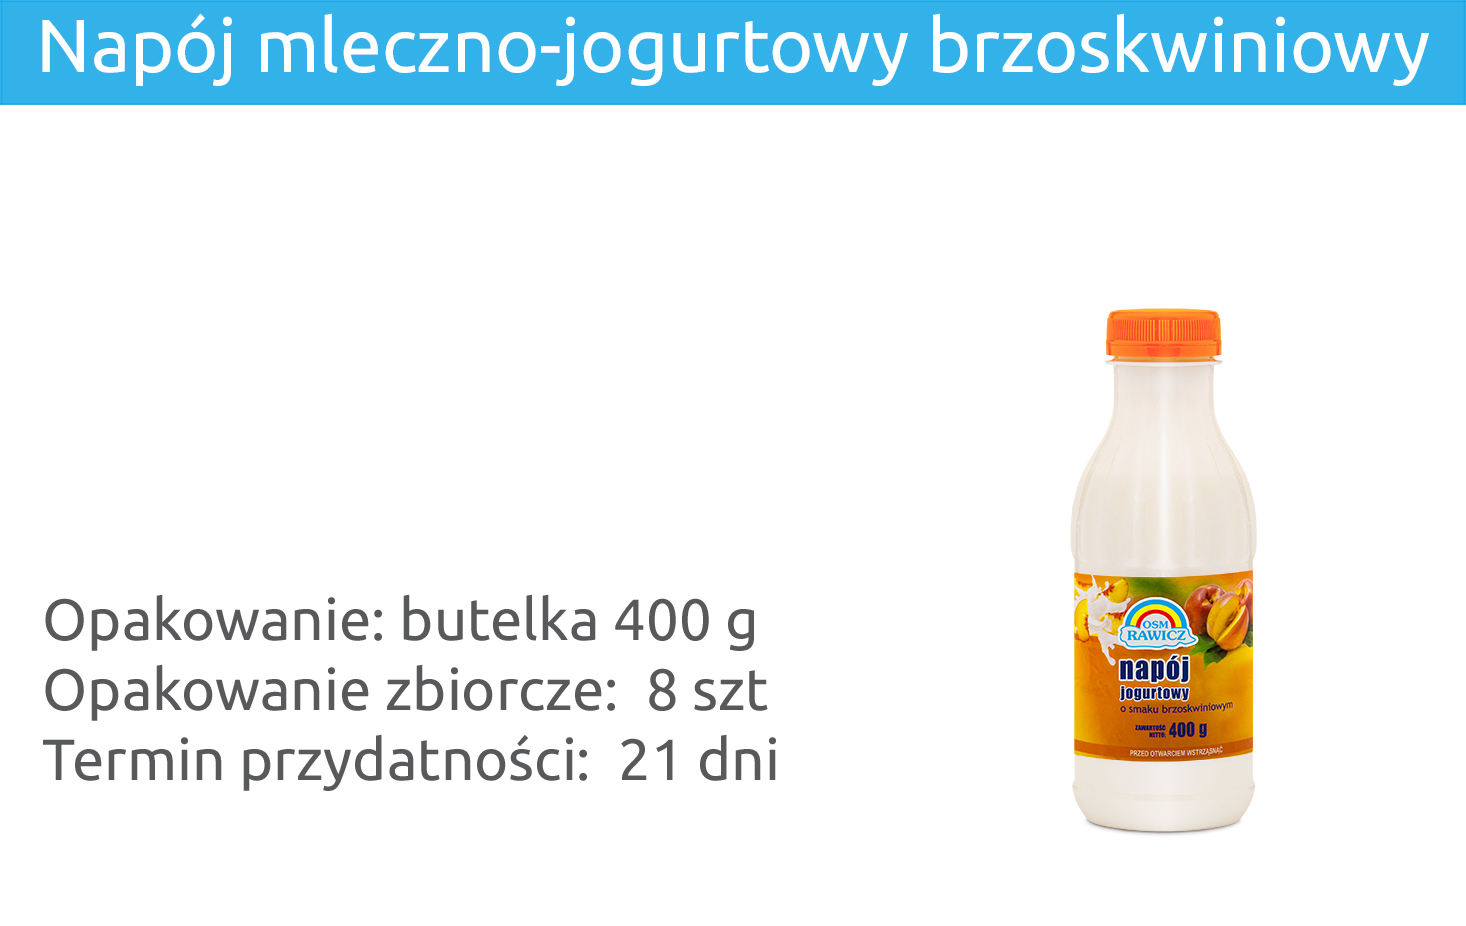 Napój mleczno-jogurtowy brzoskwiniowy 400g